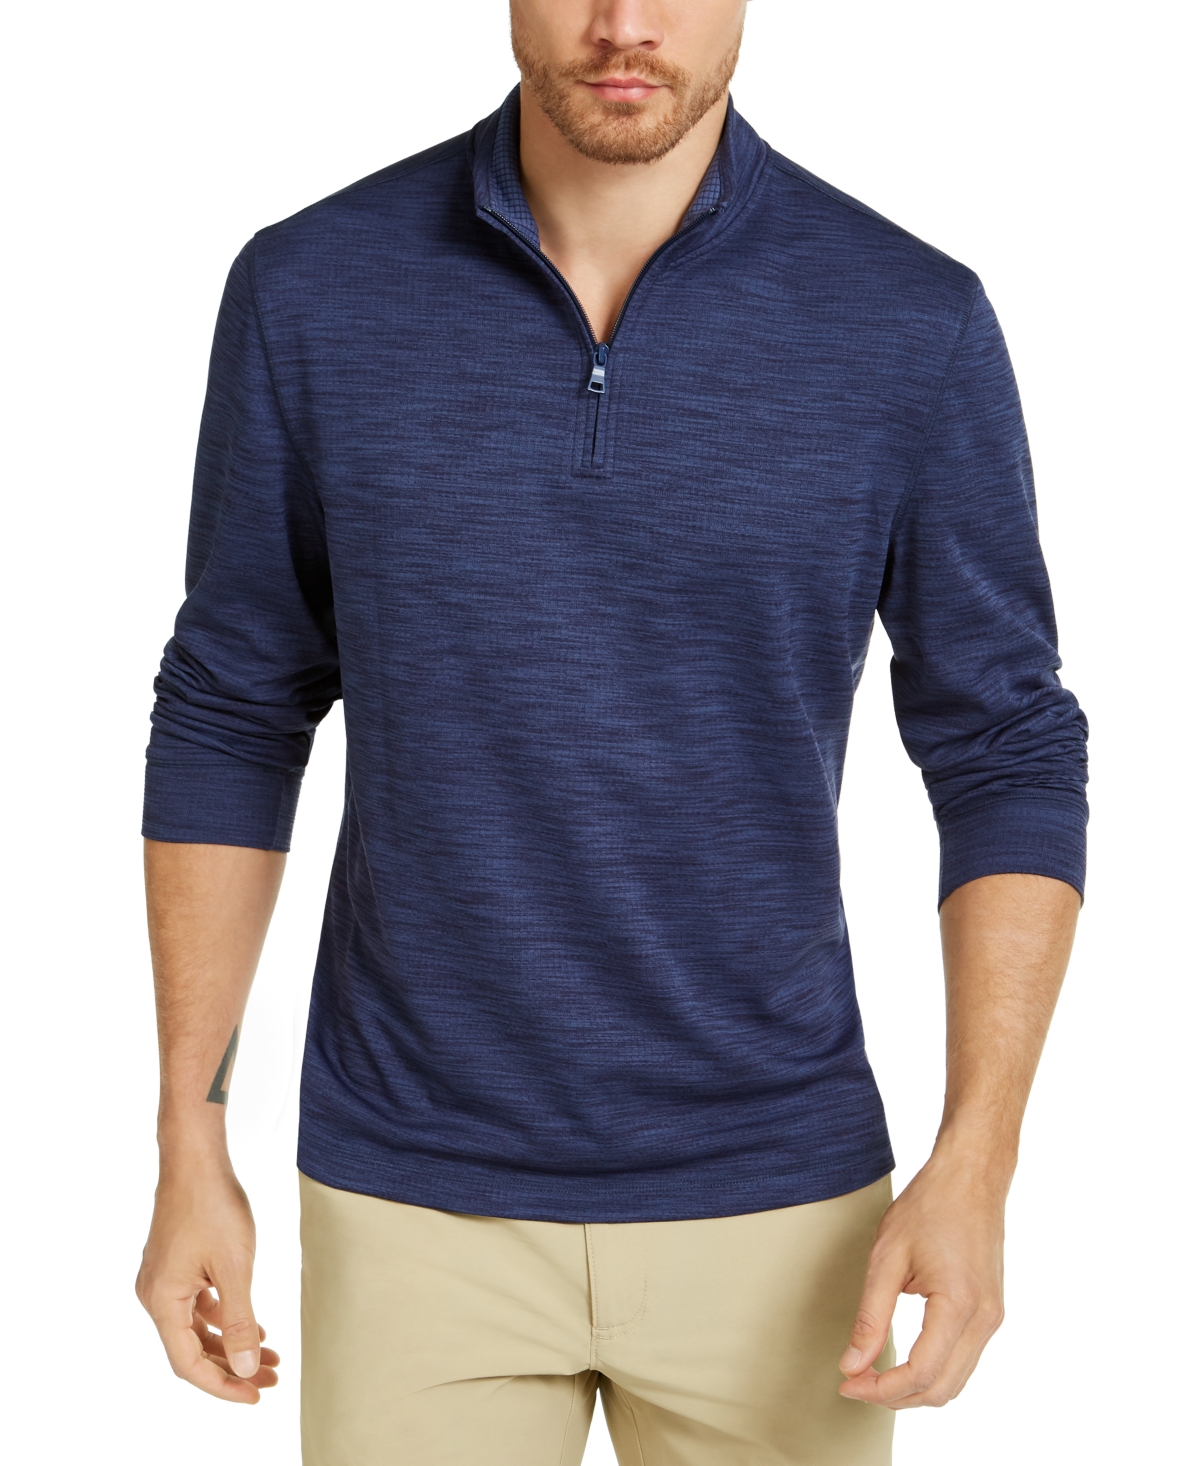 Men's Quarter-Zip Tech Sweatshirt, Created for Macy's - Navy Blue